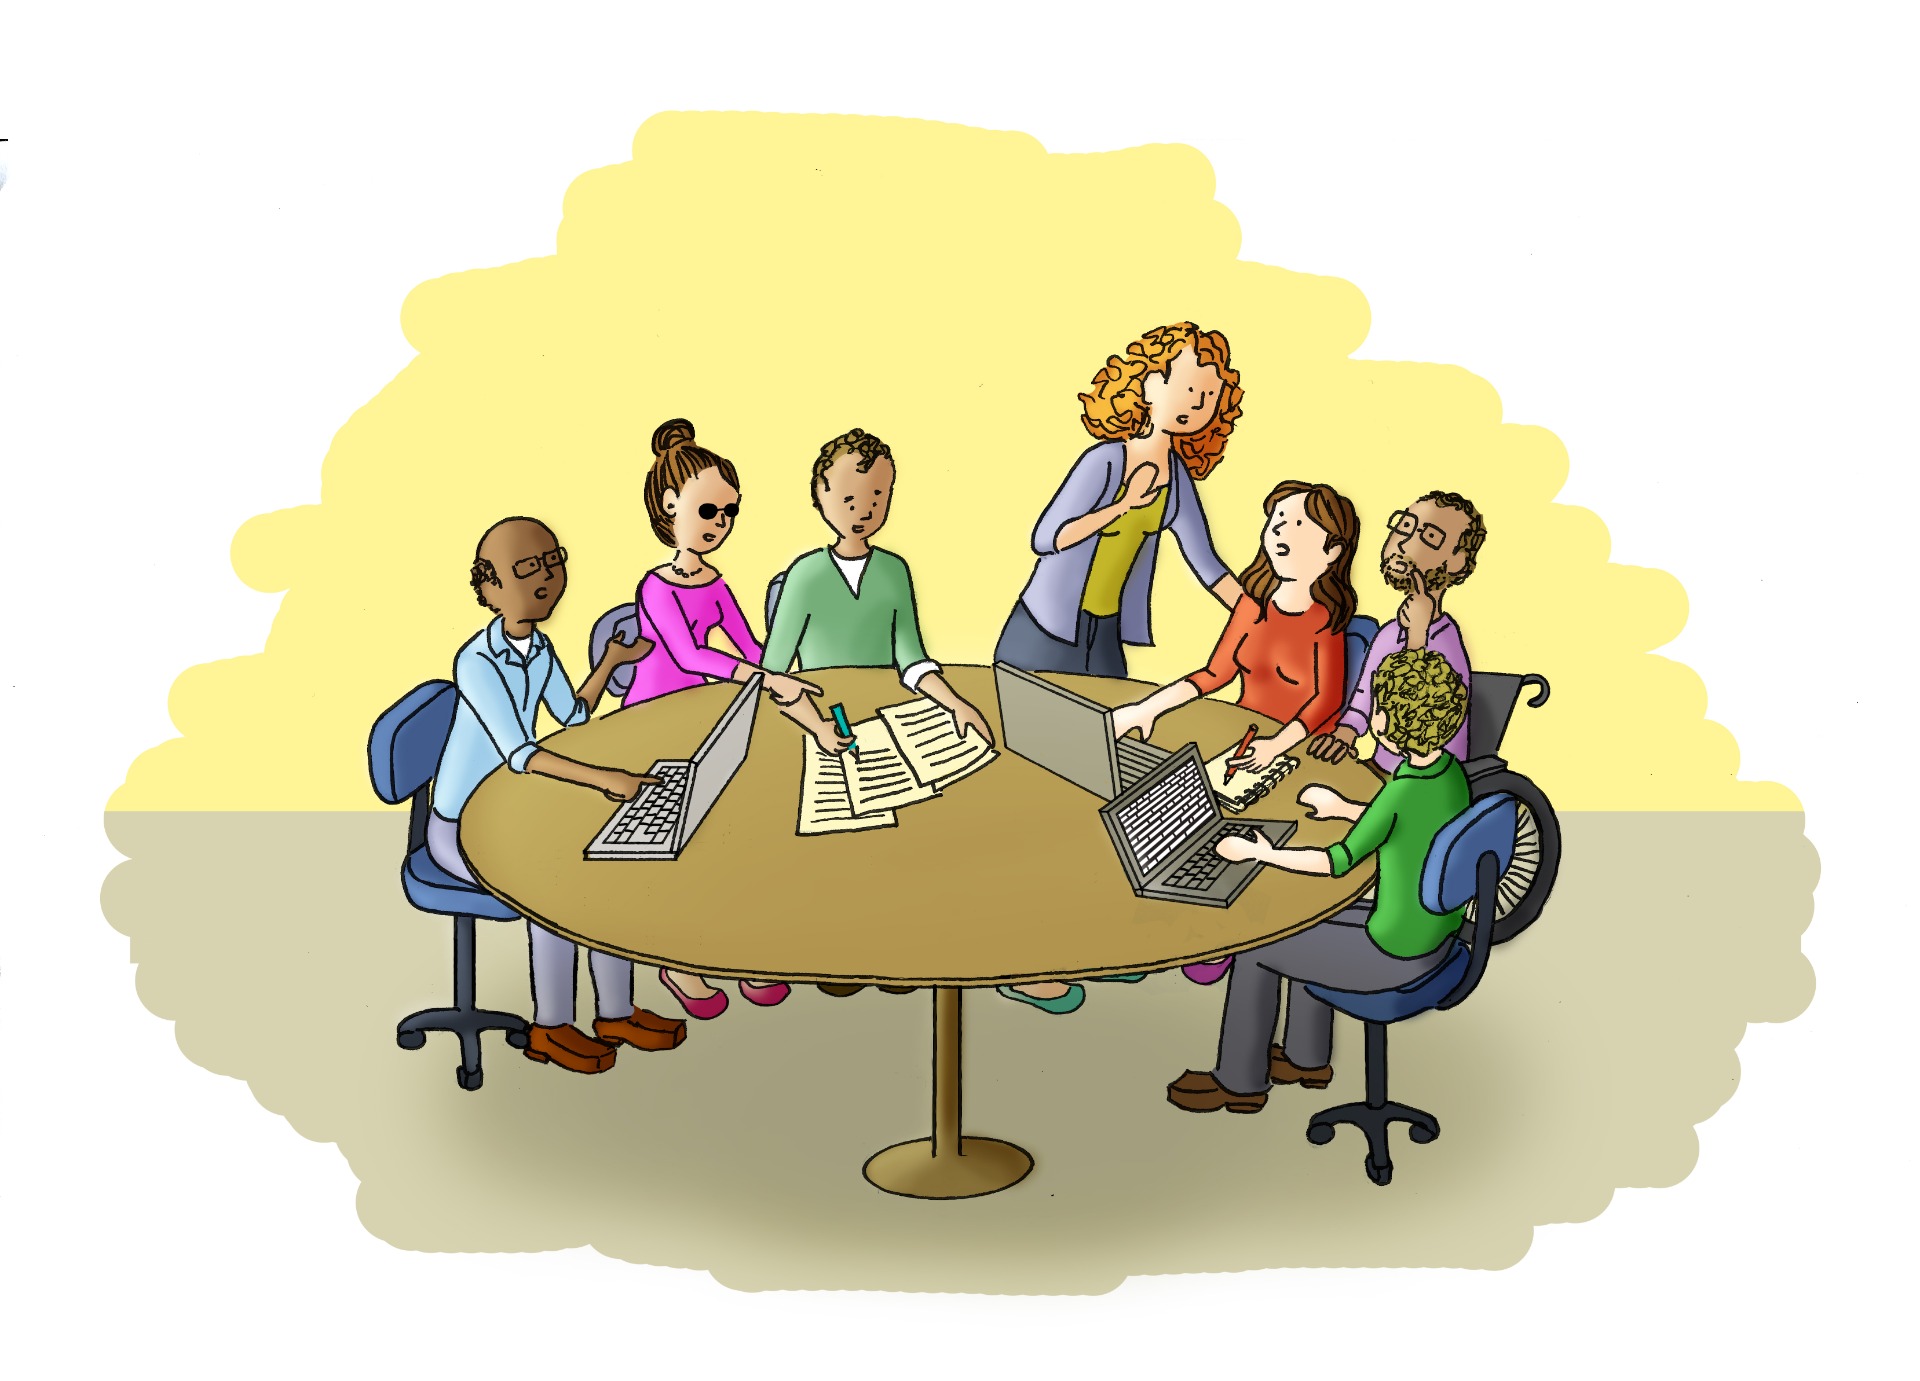 Em torno de uma mesa redonda de escritório, uma equipe de sete pessoas de diferentes perfis está sentada olhando relatórios em papel e laptops, enquanto discutem sobre o conteúdo. Uma pessoa está em pé e se apoia no ombro de outra.